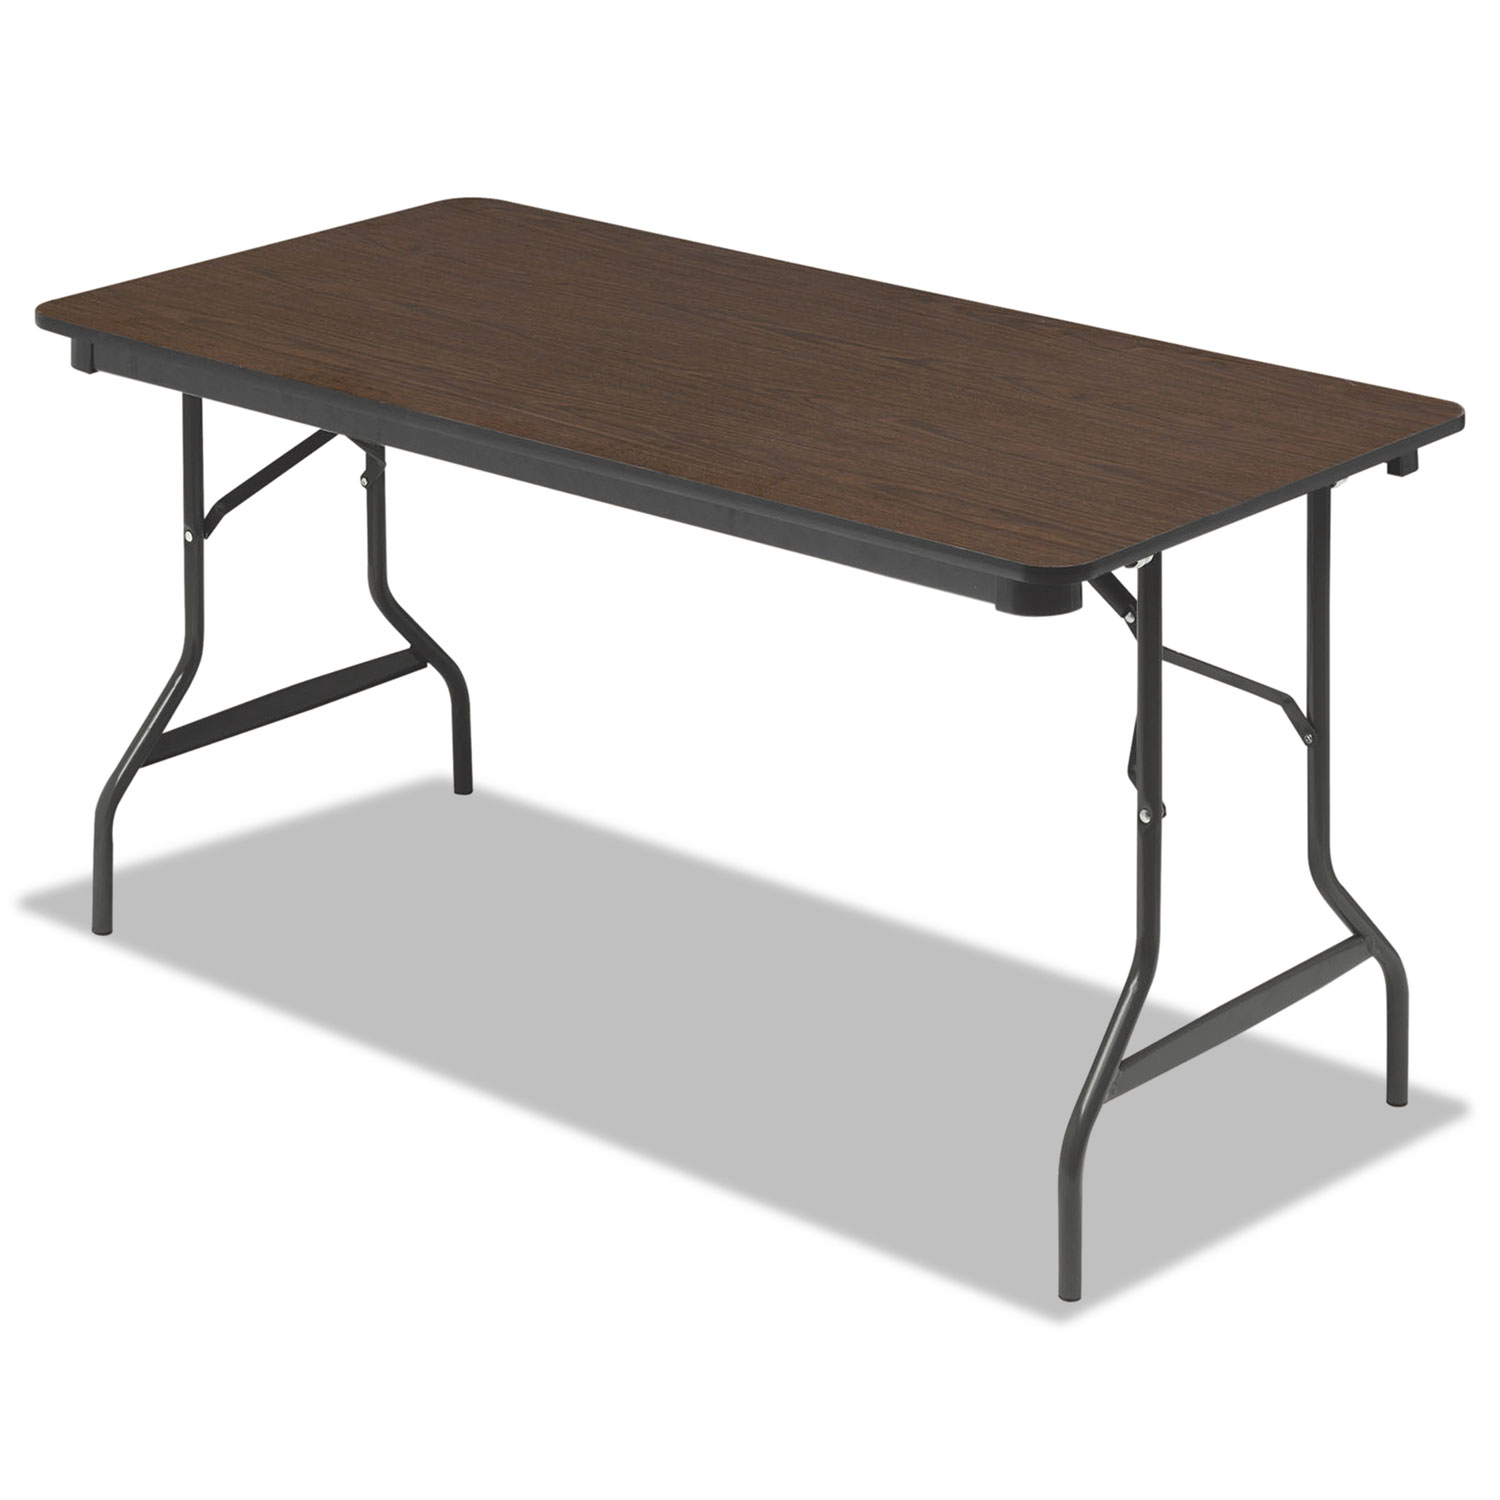  Iceberg 55314 Economy Wood Laminate Folding Table, Rectangular, 60w x 30d x 29h, Walnut (ICE55314) 